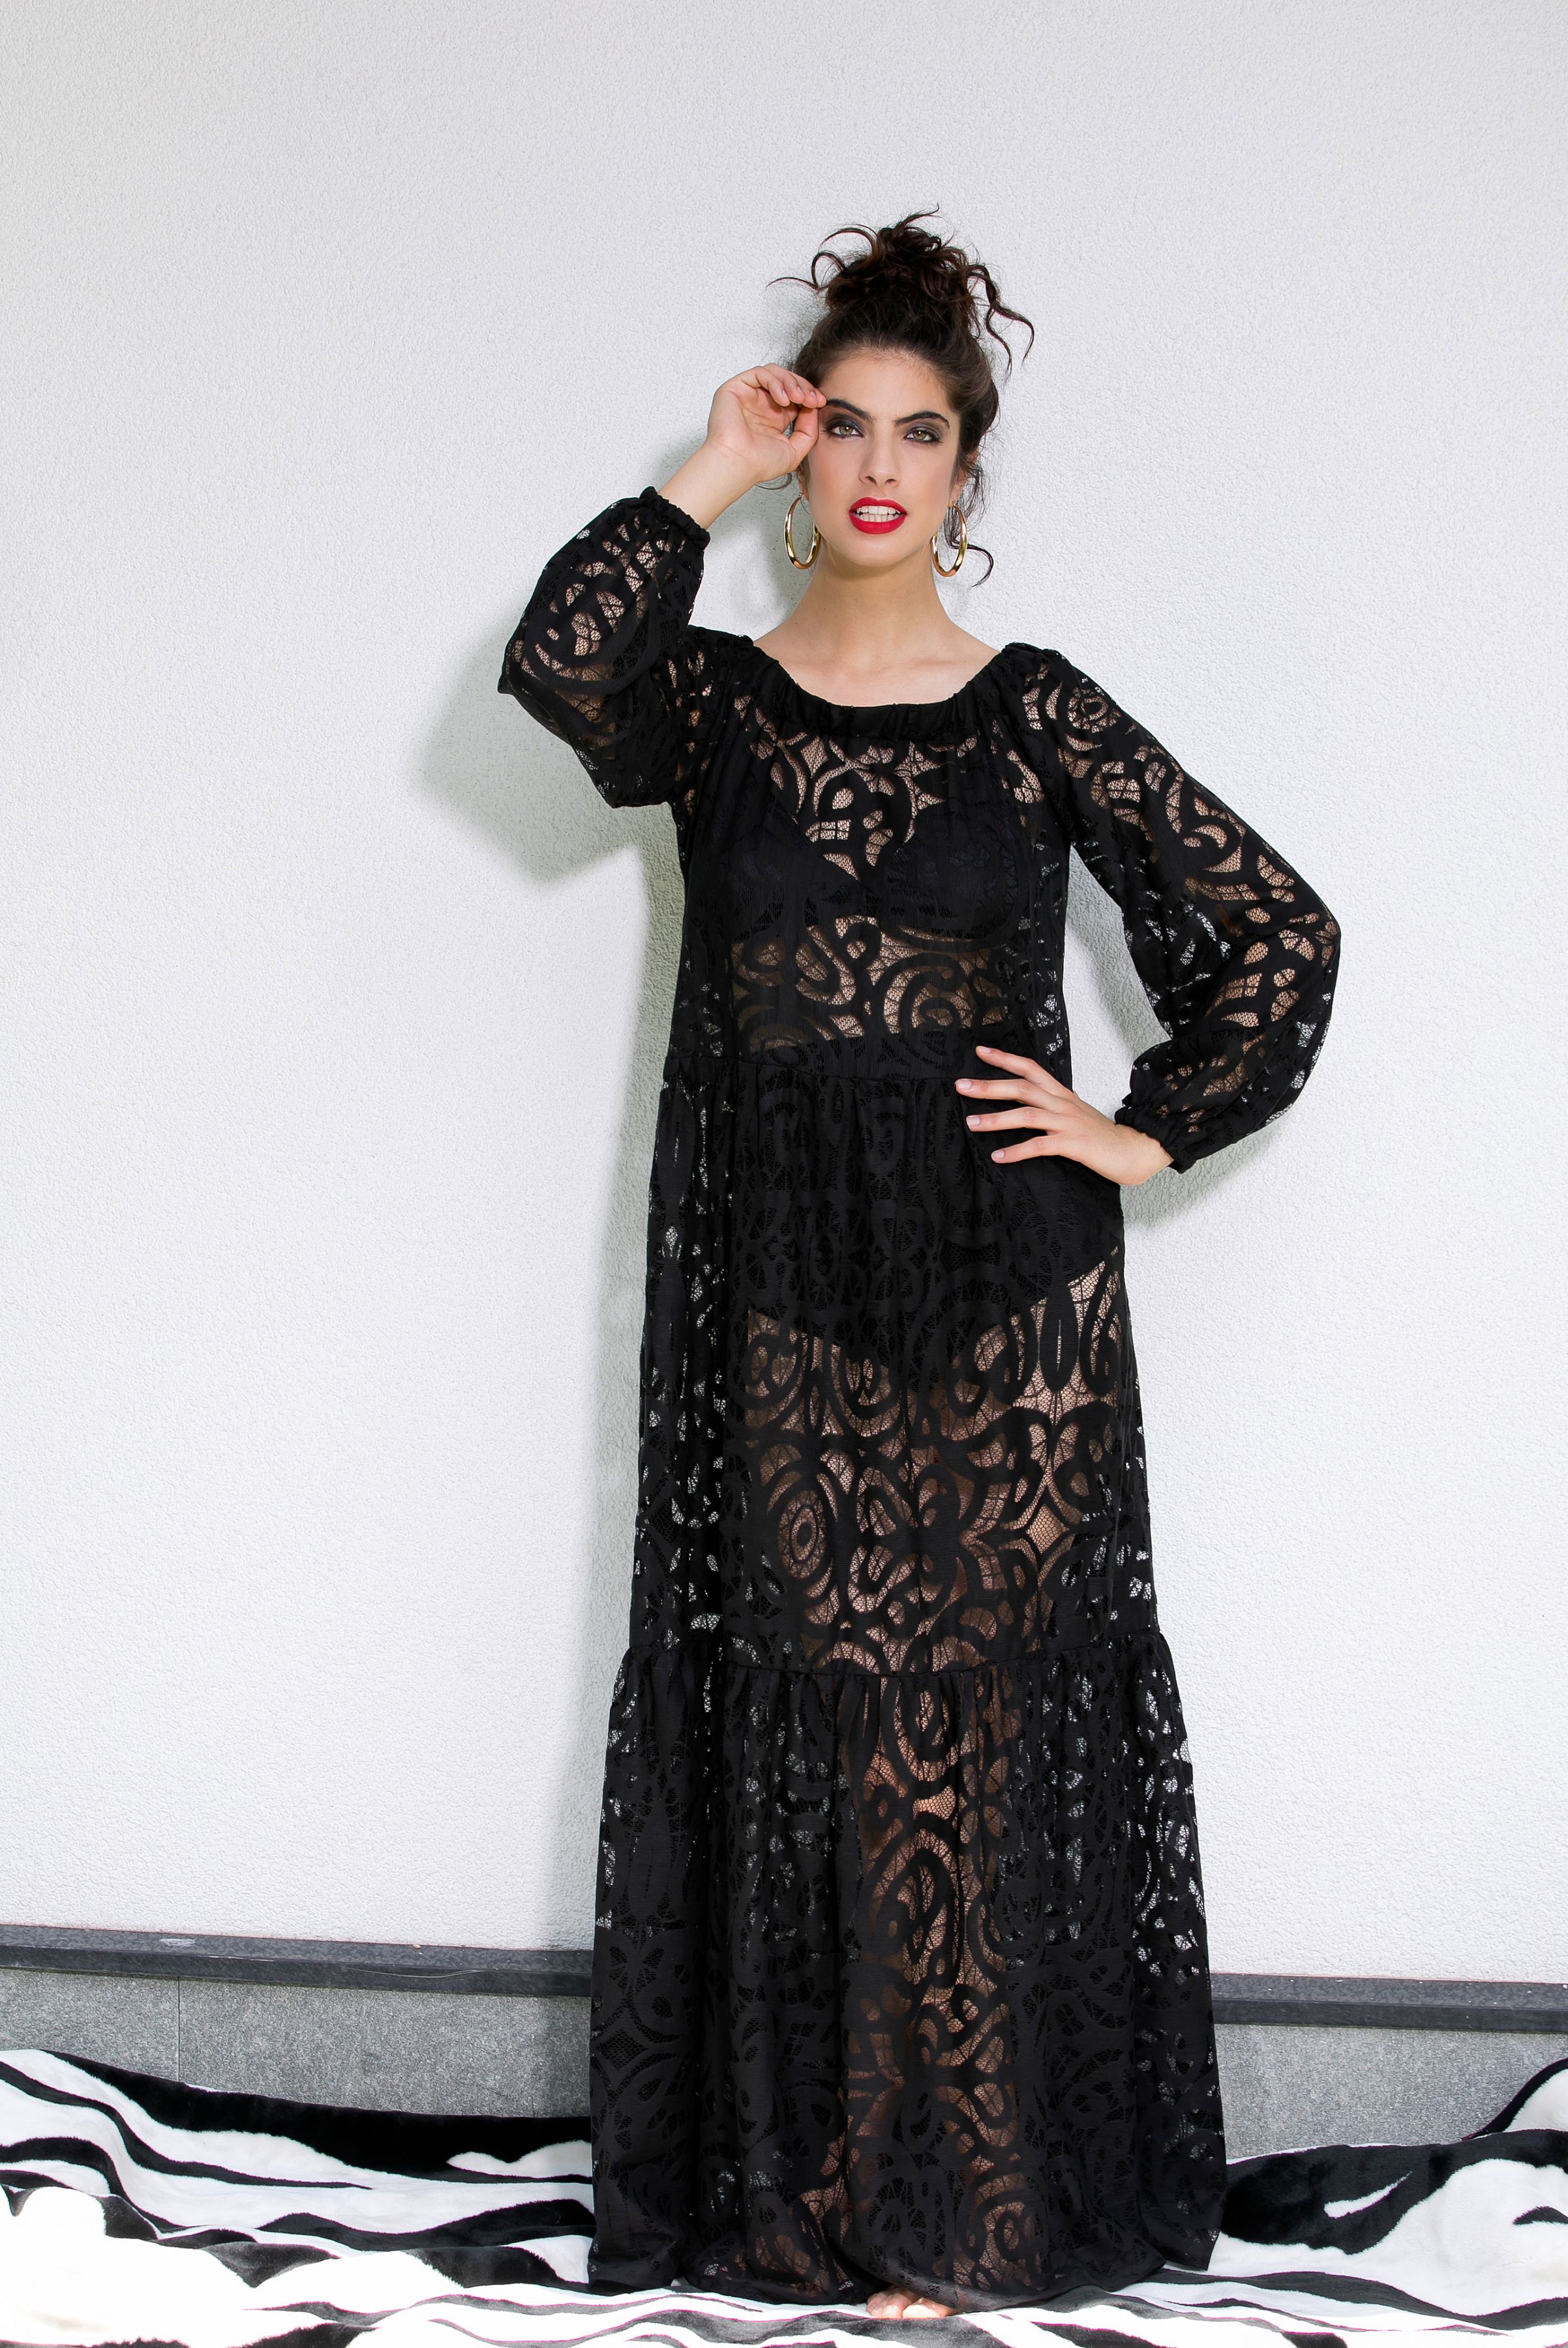 black lace boho maxi dress